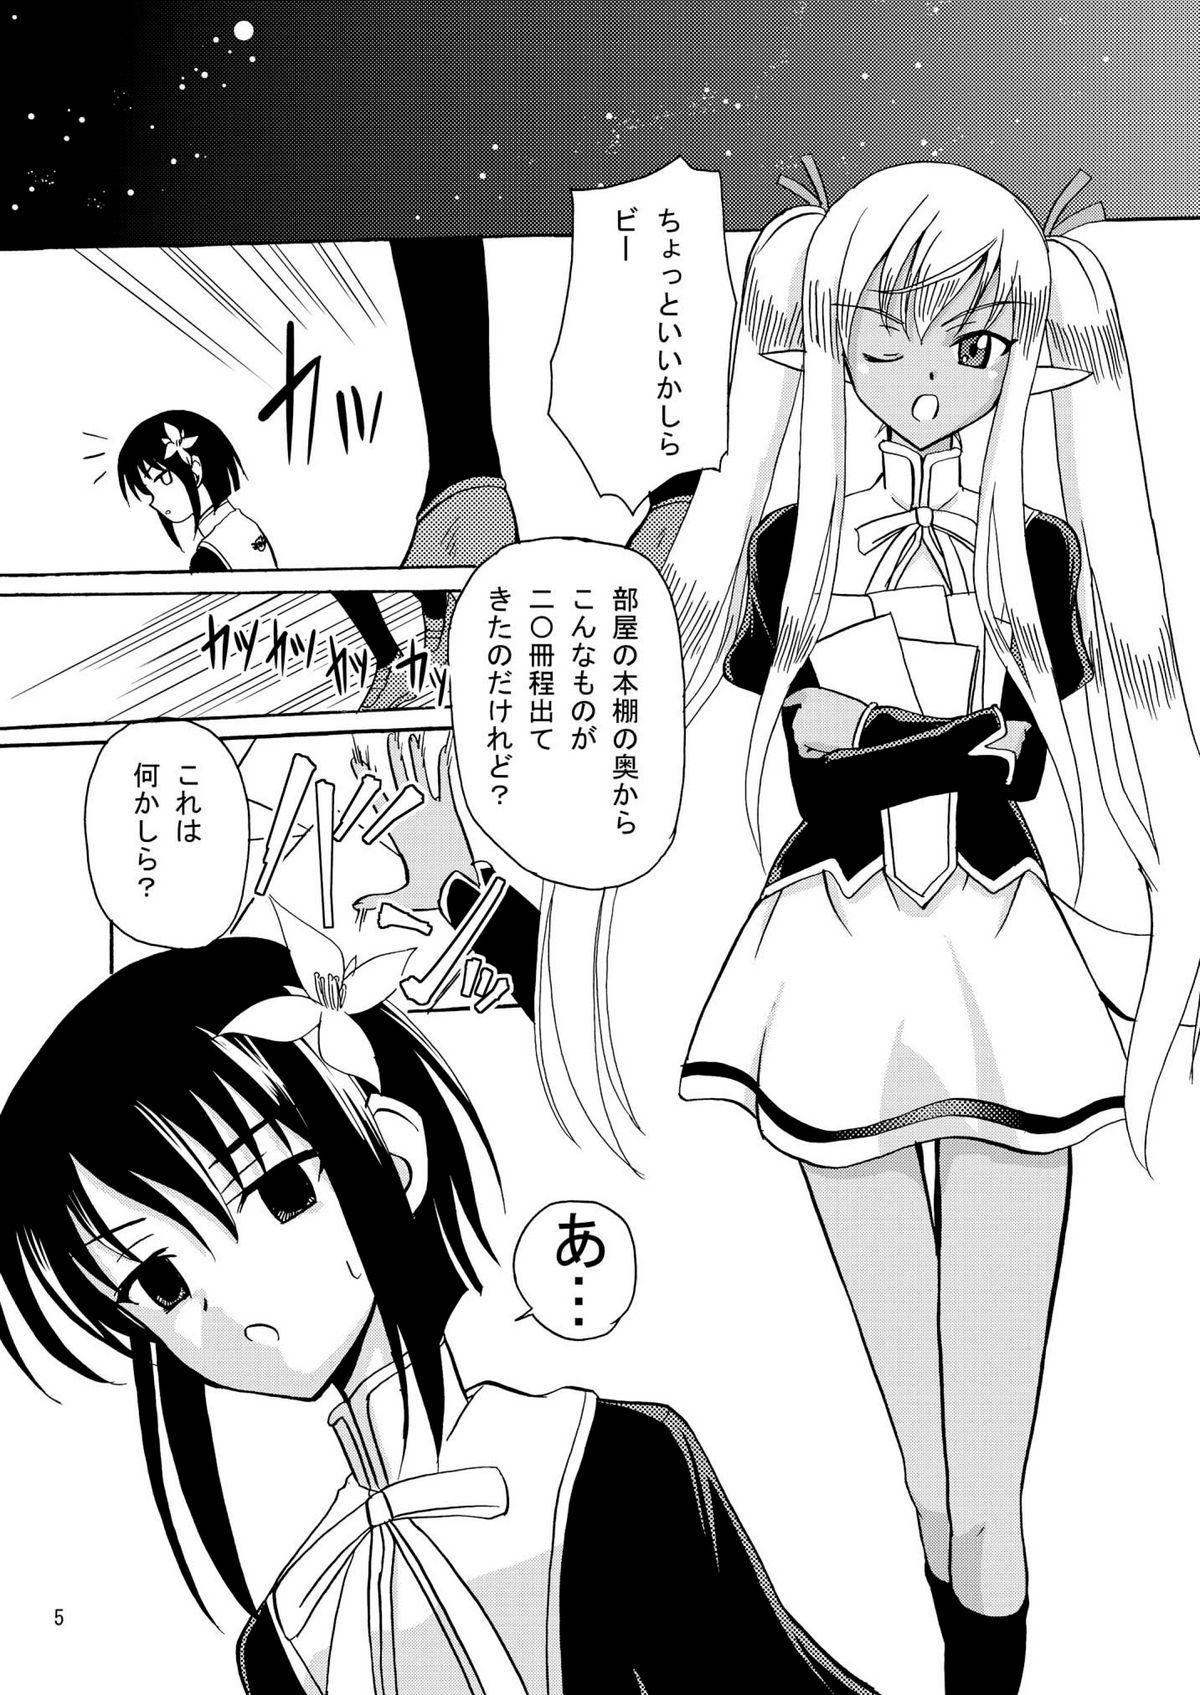 Horny ARCANUMS 16 Junbigou - Mahou sensei negima Public Sex - Page 5